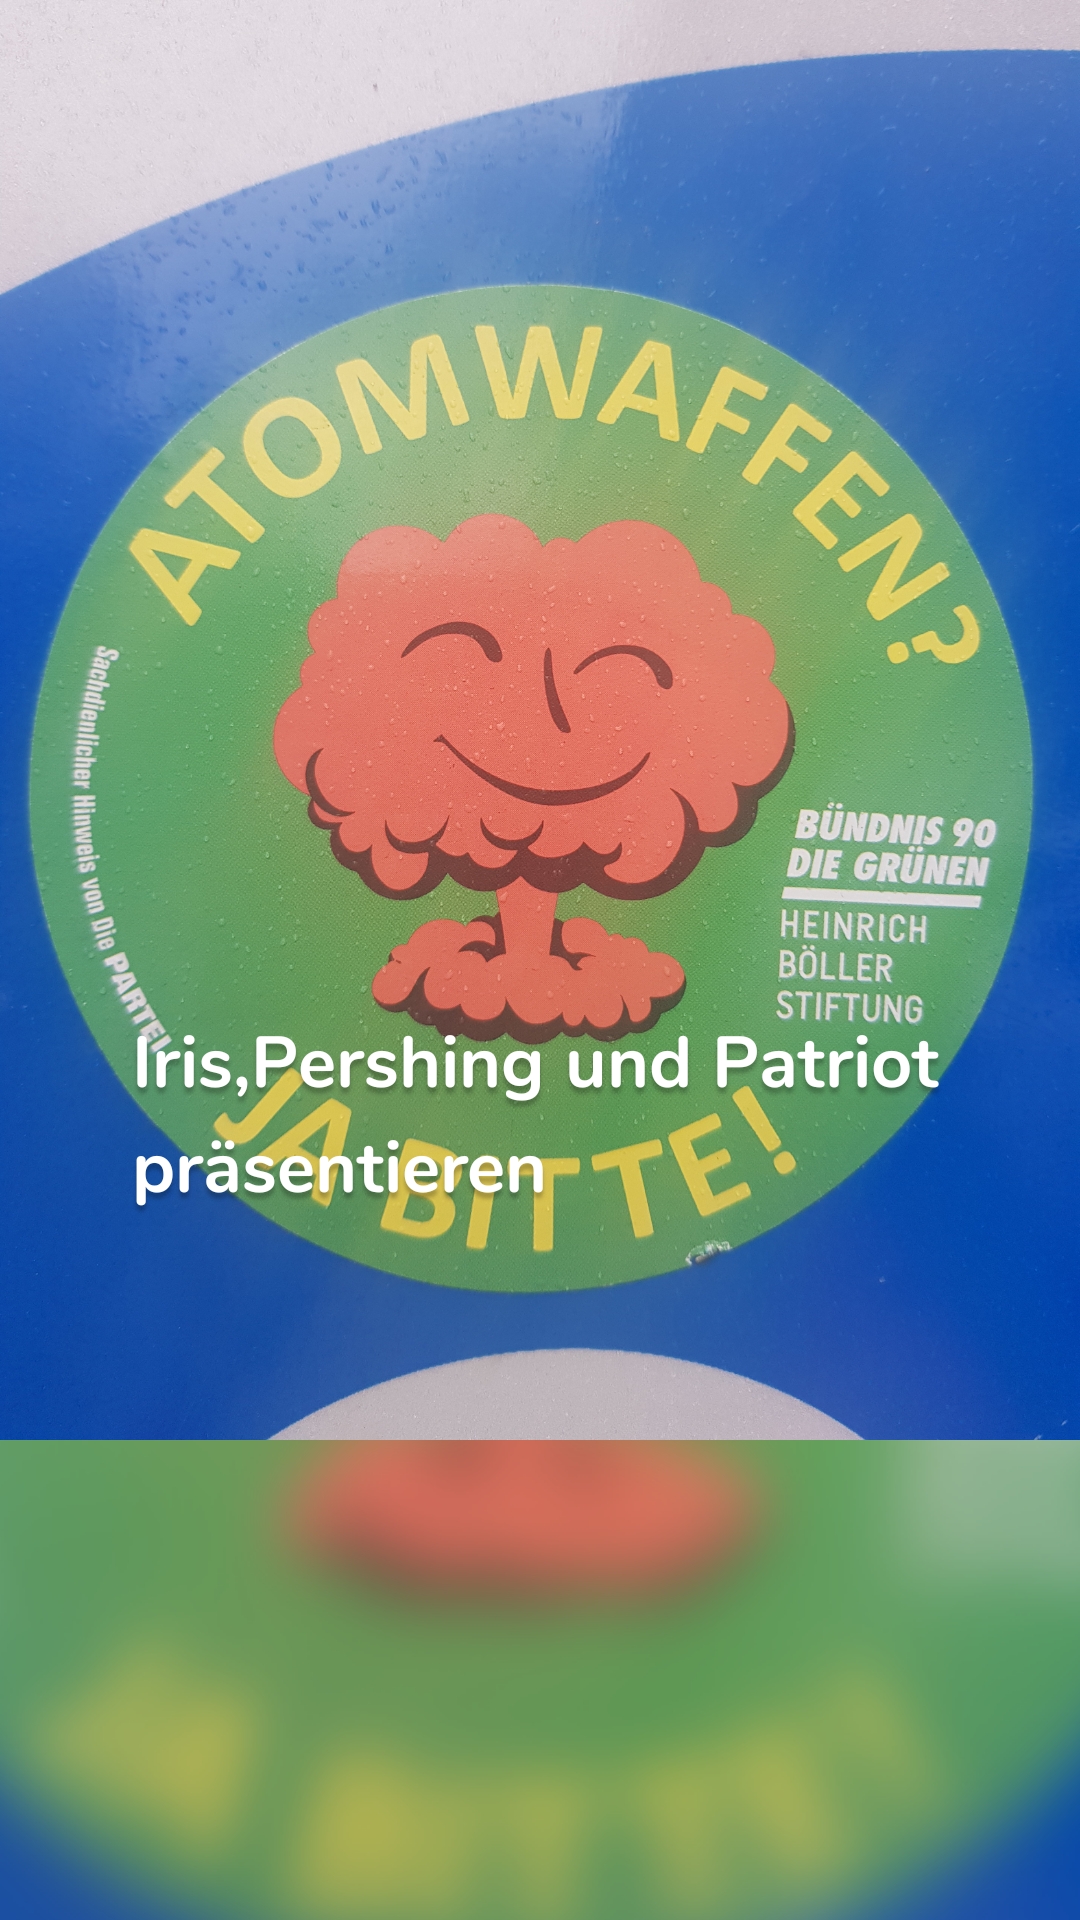 Iris,Pershing und Patriot
präsentieren